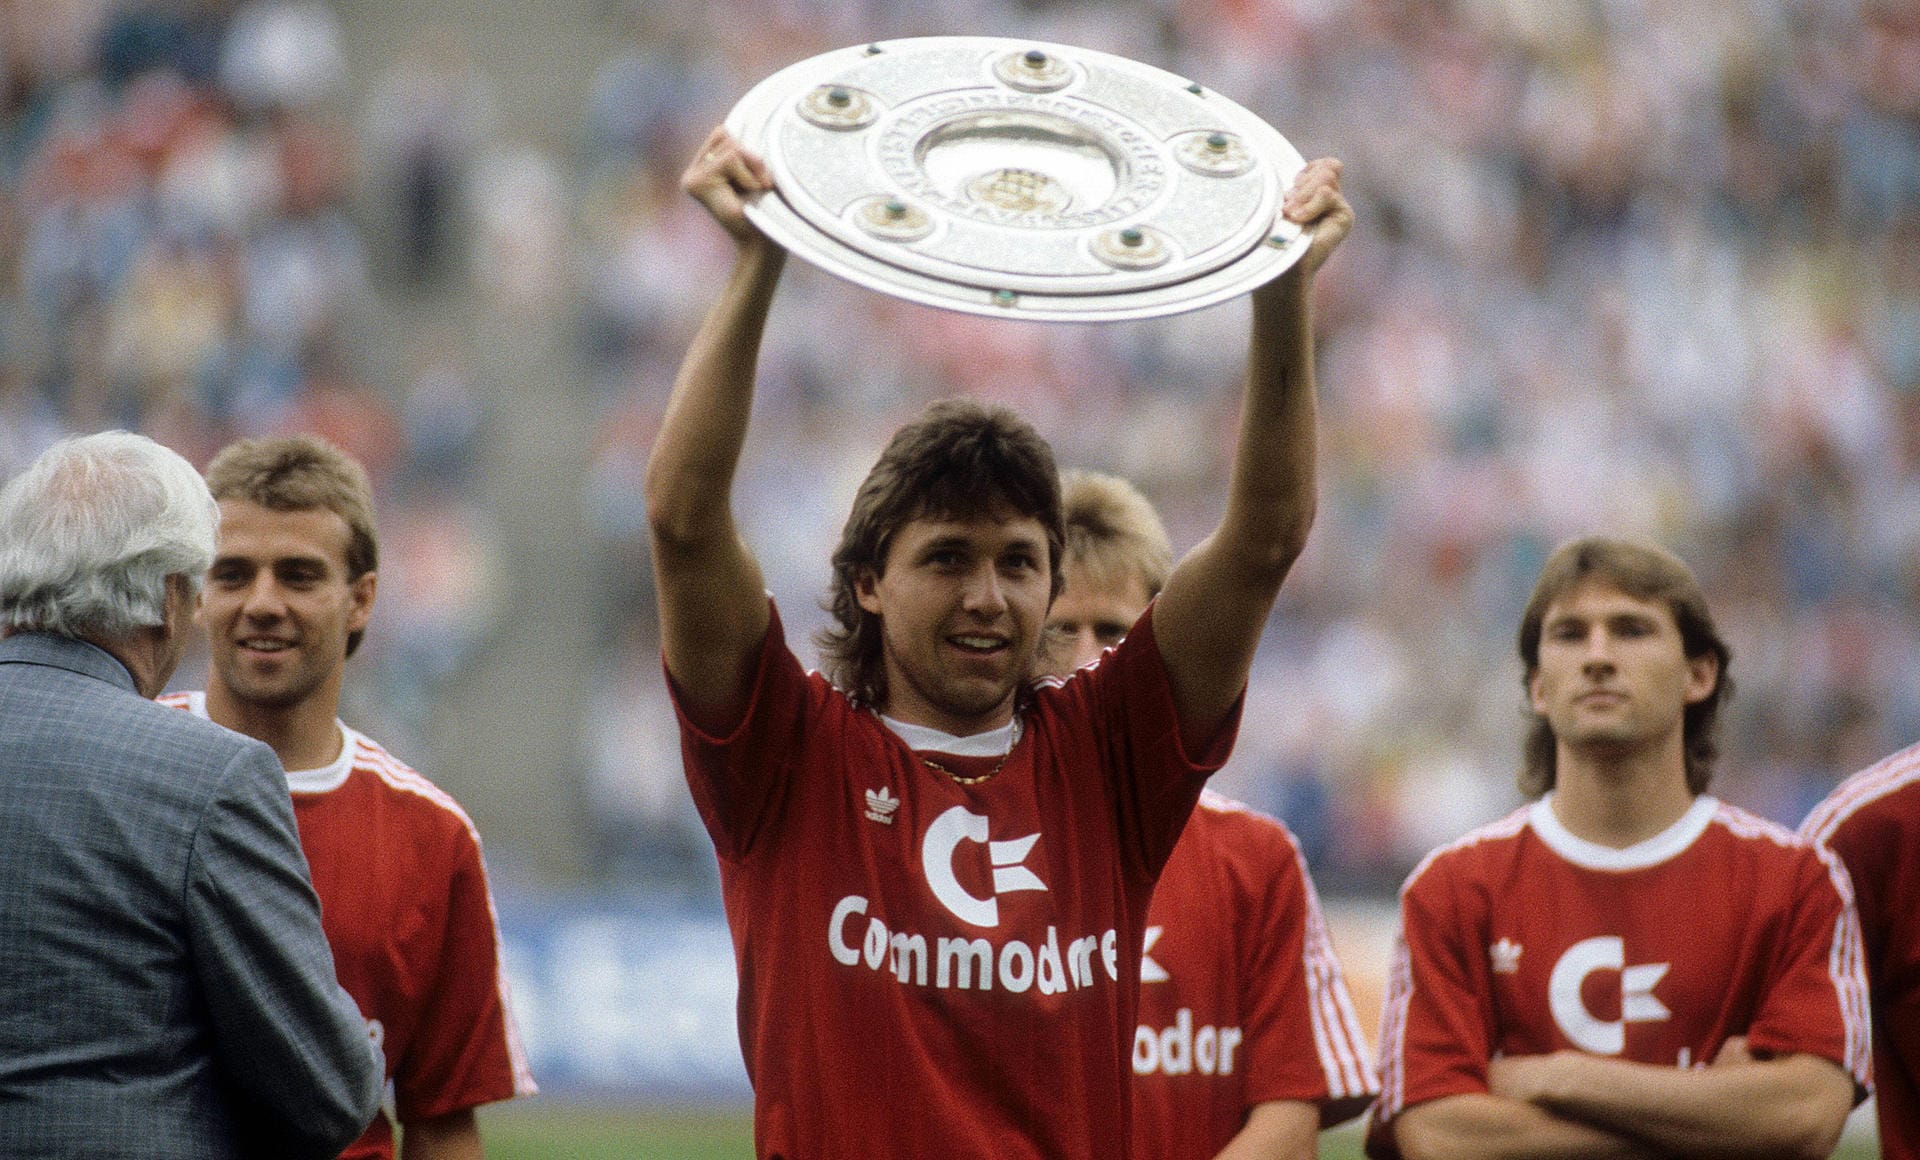 Bereits ein Jahr nach dem Rummenigge-Wechsel fand ein zweiter FCB-Profi den Weg nach Dortmund. Jürgen Wegmann verabschiedete sich mit der Meisterschale aus München und kehrte zur Borussia zurück (Ablöse unbekannt), wo er schon von 1984 bis 1986 angeheuert hatte.